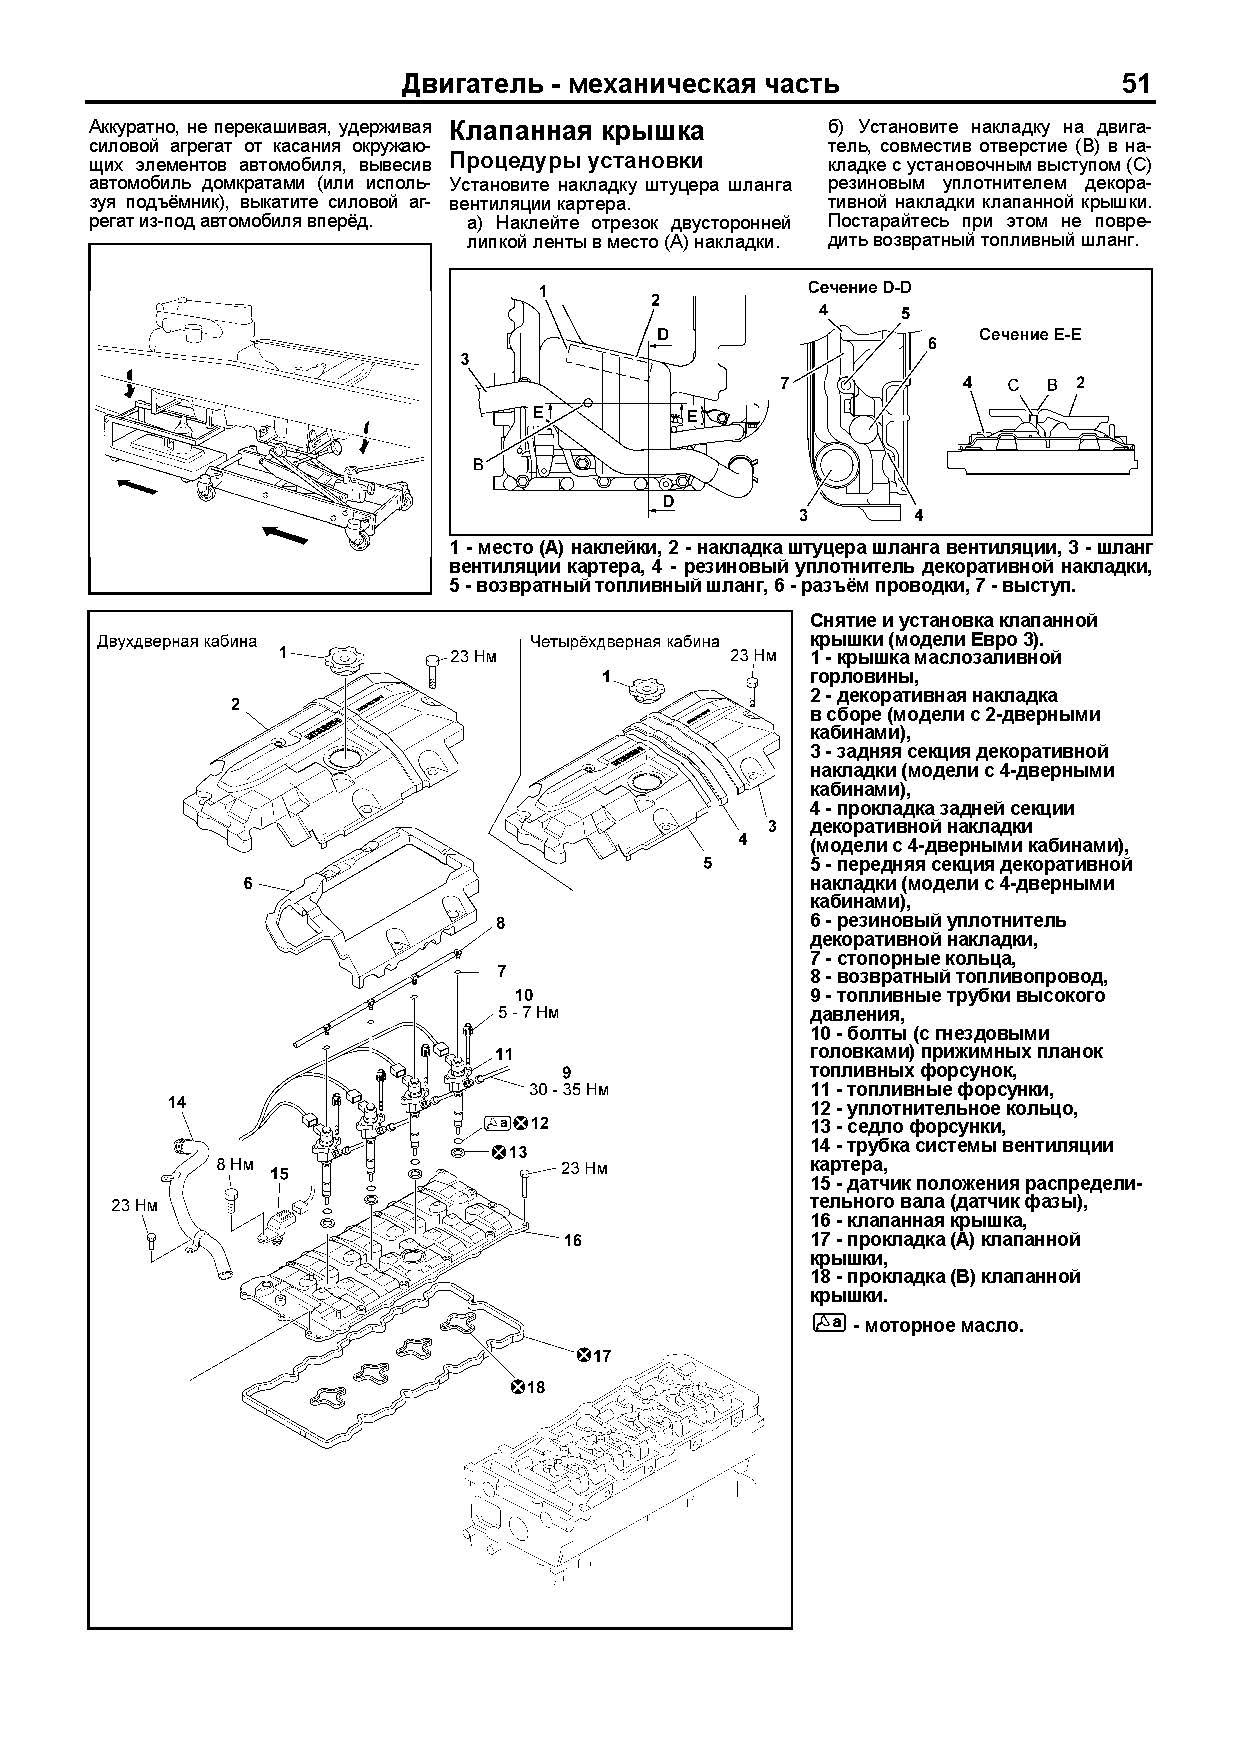 Книга Mitsubishi Fuso Canter с 2010 дизель, электросхемы. Руководство по ремонту и эксплуатации грузового автомобиля. Профессионал. Легион-Aвтодата